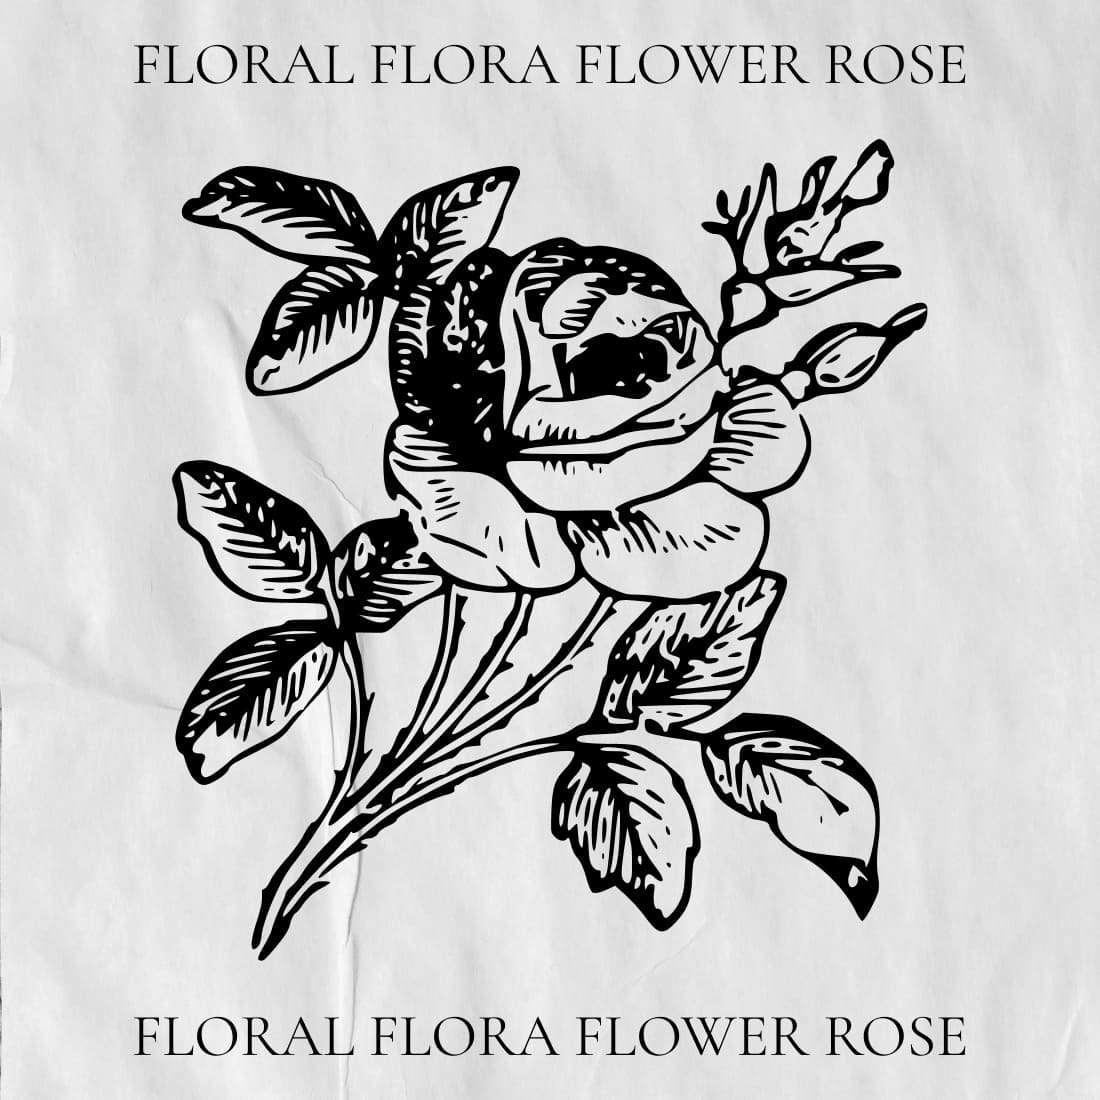 floral flora flower rose cover image.